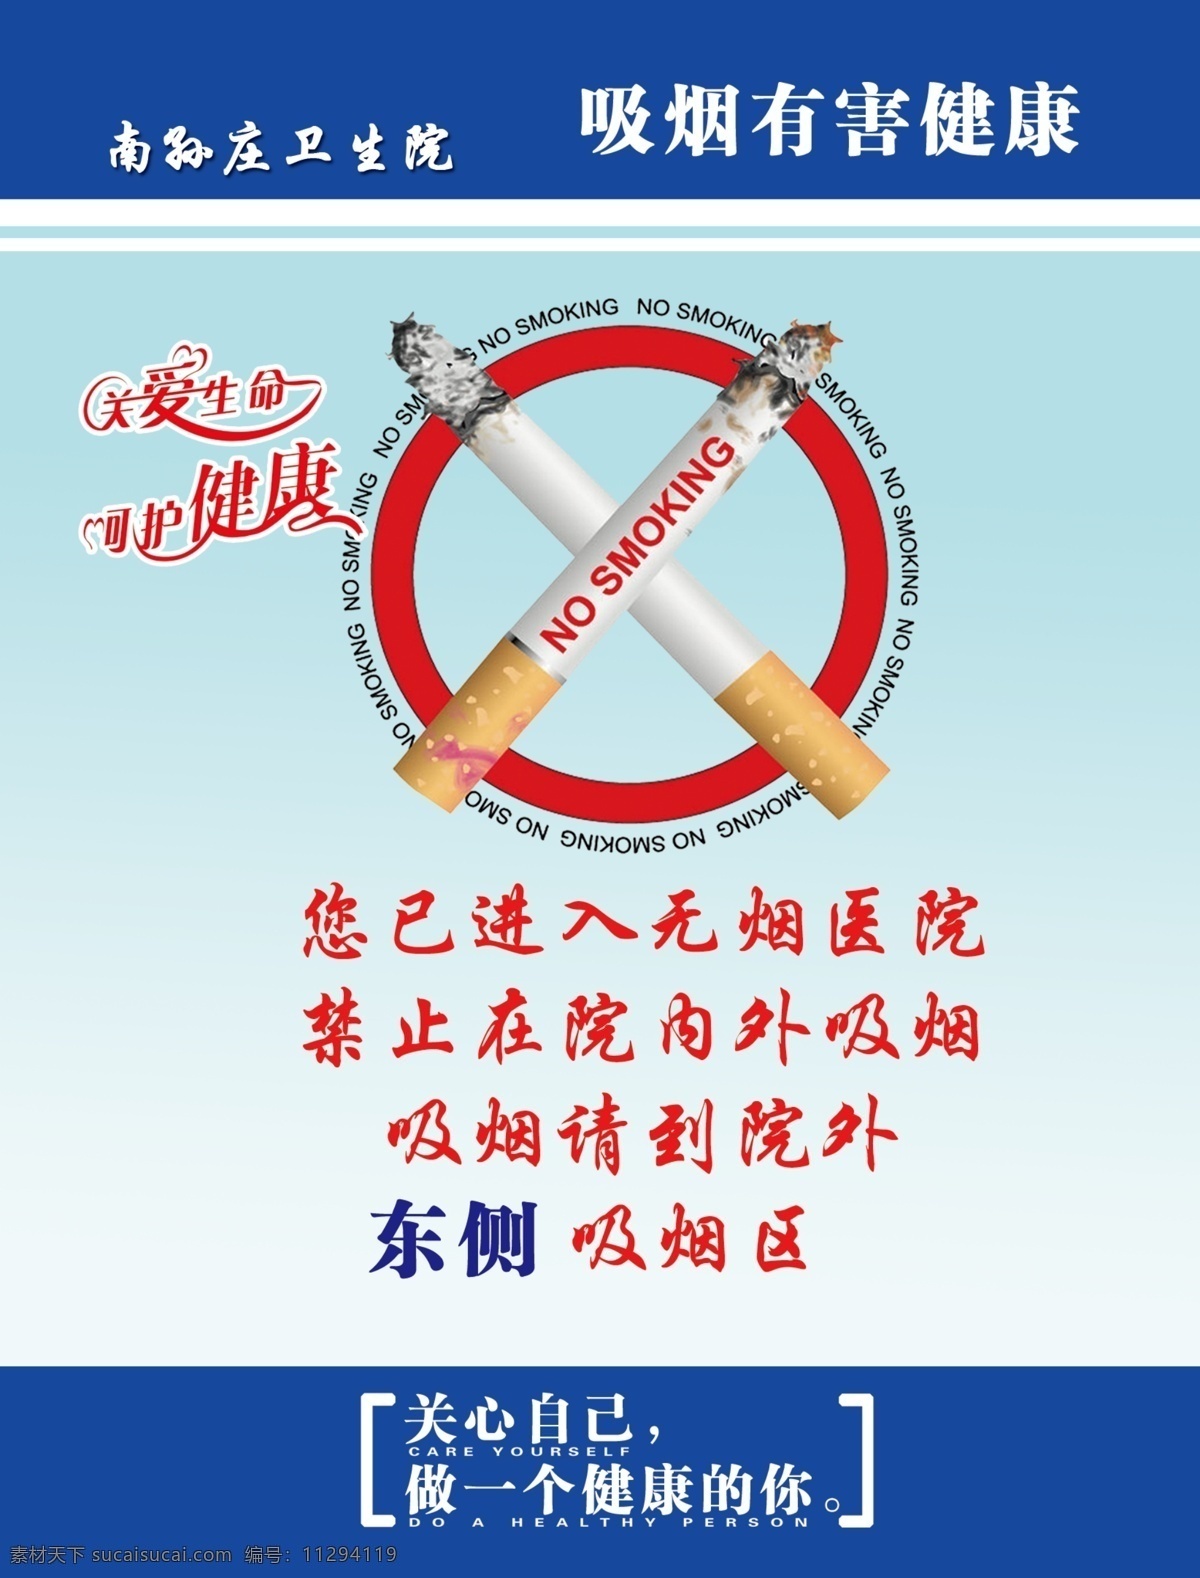 禁止吸烟 吸烟区指示牌 吸烟有害健康 蓝色 宣传 禁止 吸烟 医院 图 关爱生命 呵护 健康 展牌 展板模板 广告设计模板 源文件